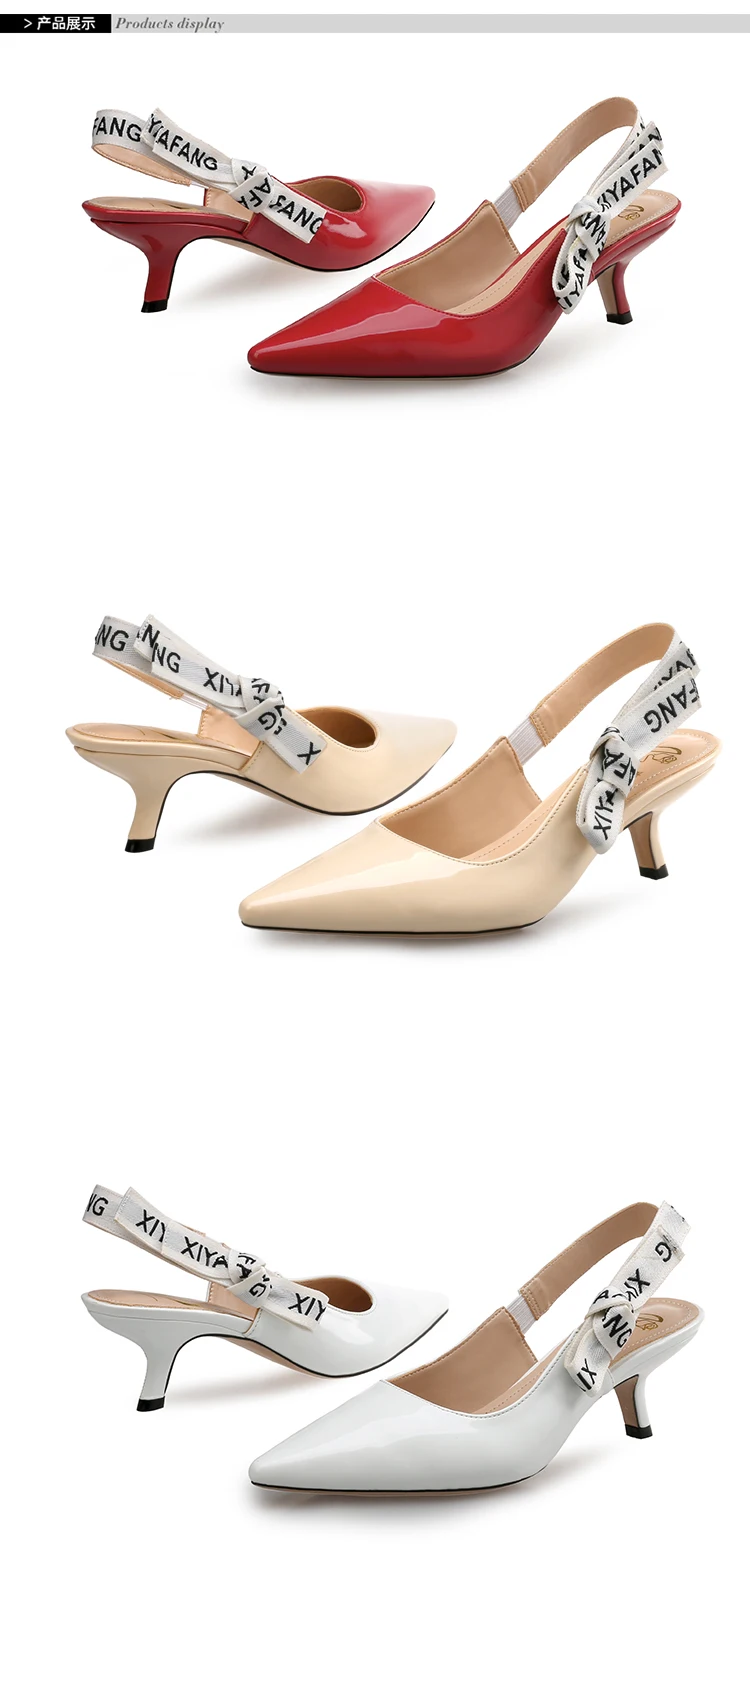 BaoYaFang/летние модные женские босоножки нарядные модельные туфли с острым носком на тонком каблуке для девочек свадебные туфли для невесты женская обувь на высоком каблуке 6 см